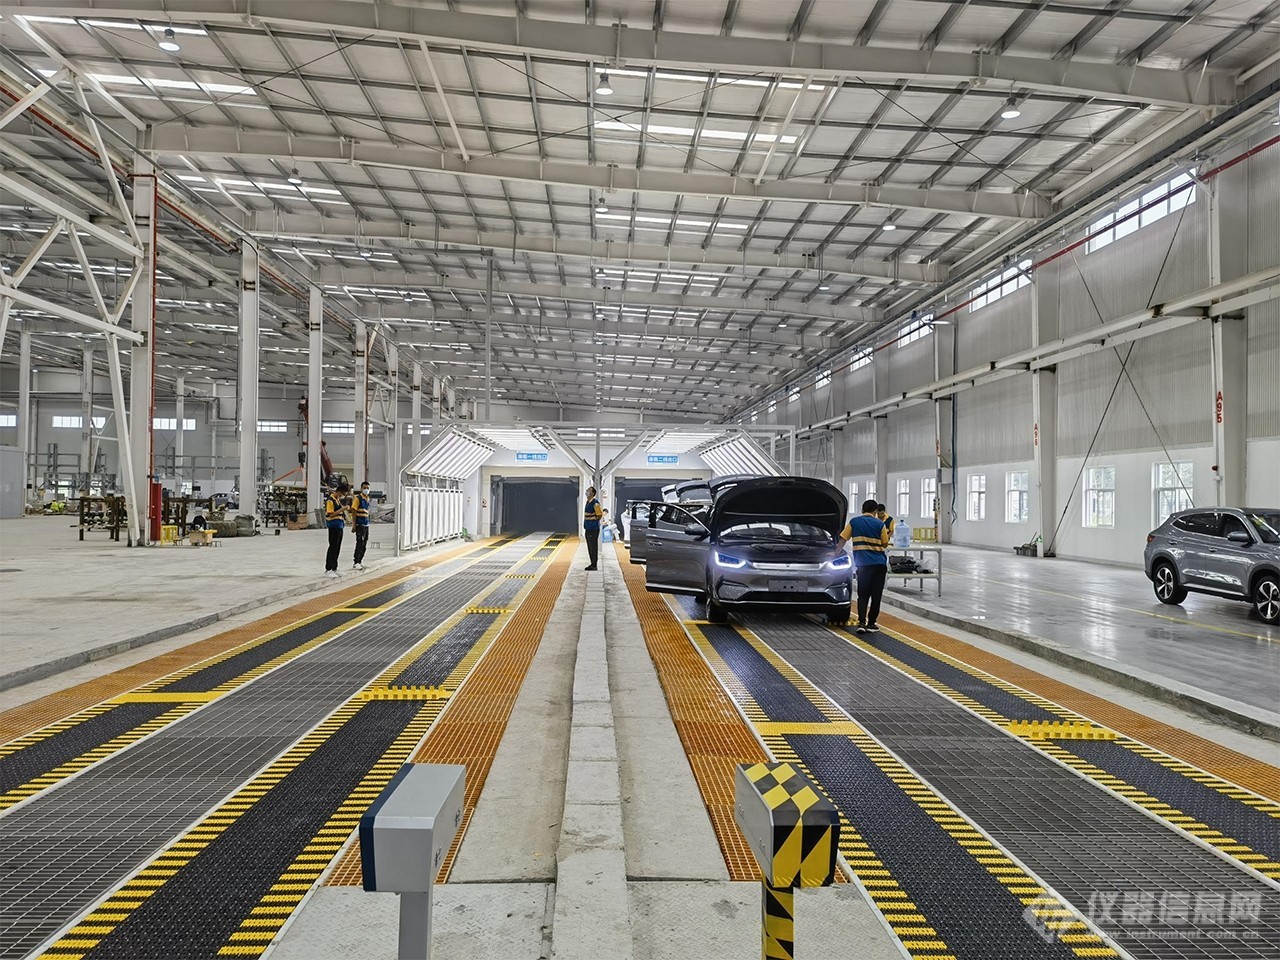 安车检测近期连续中标汽车制造厂项目 全年累计近一个亿合同额 